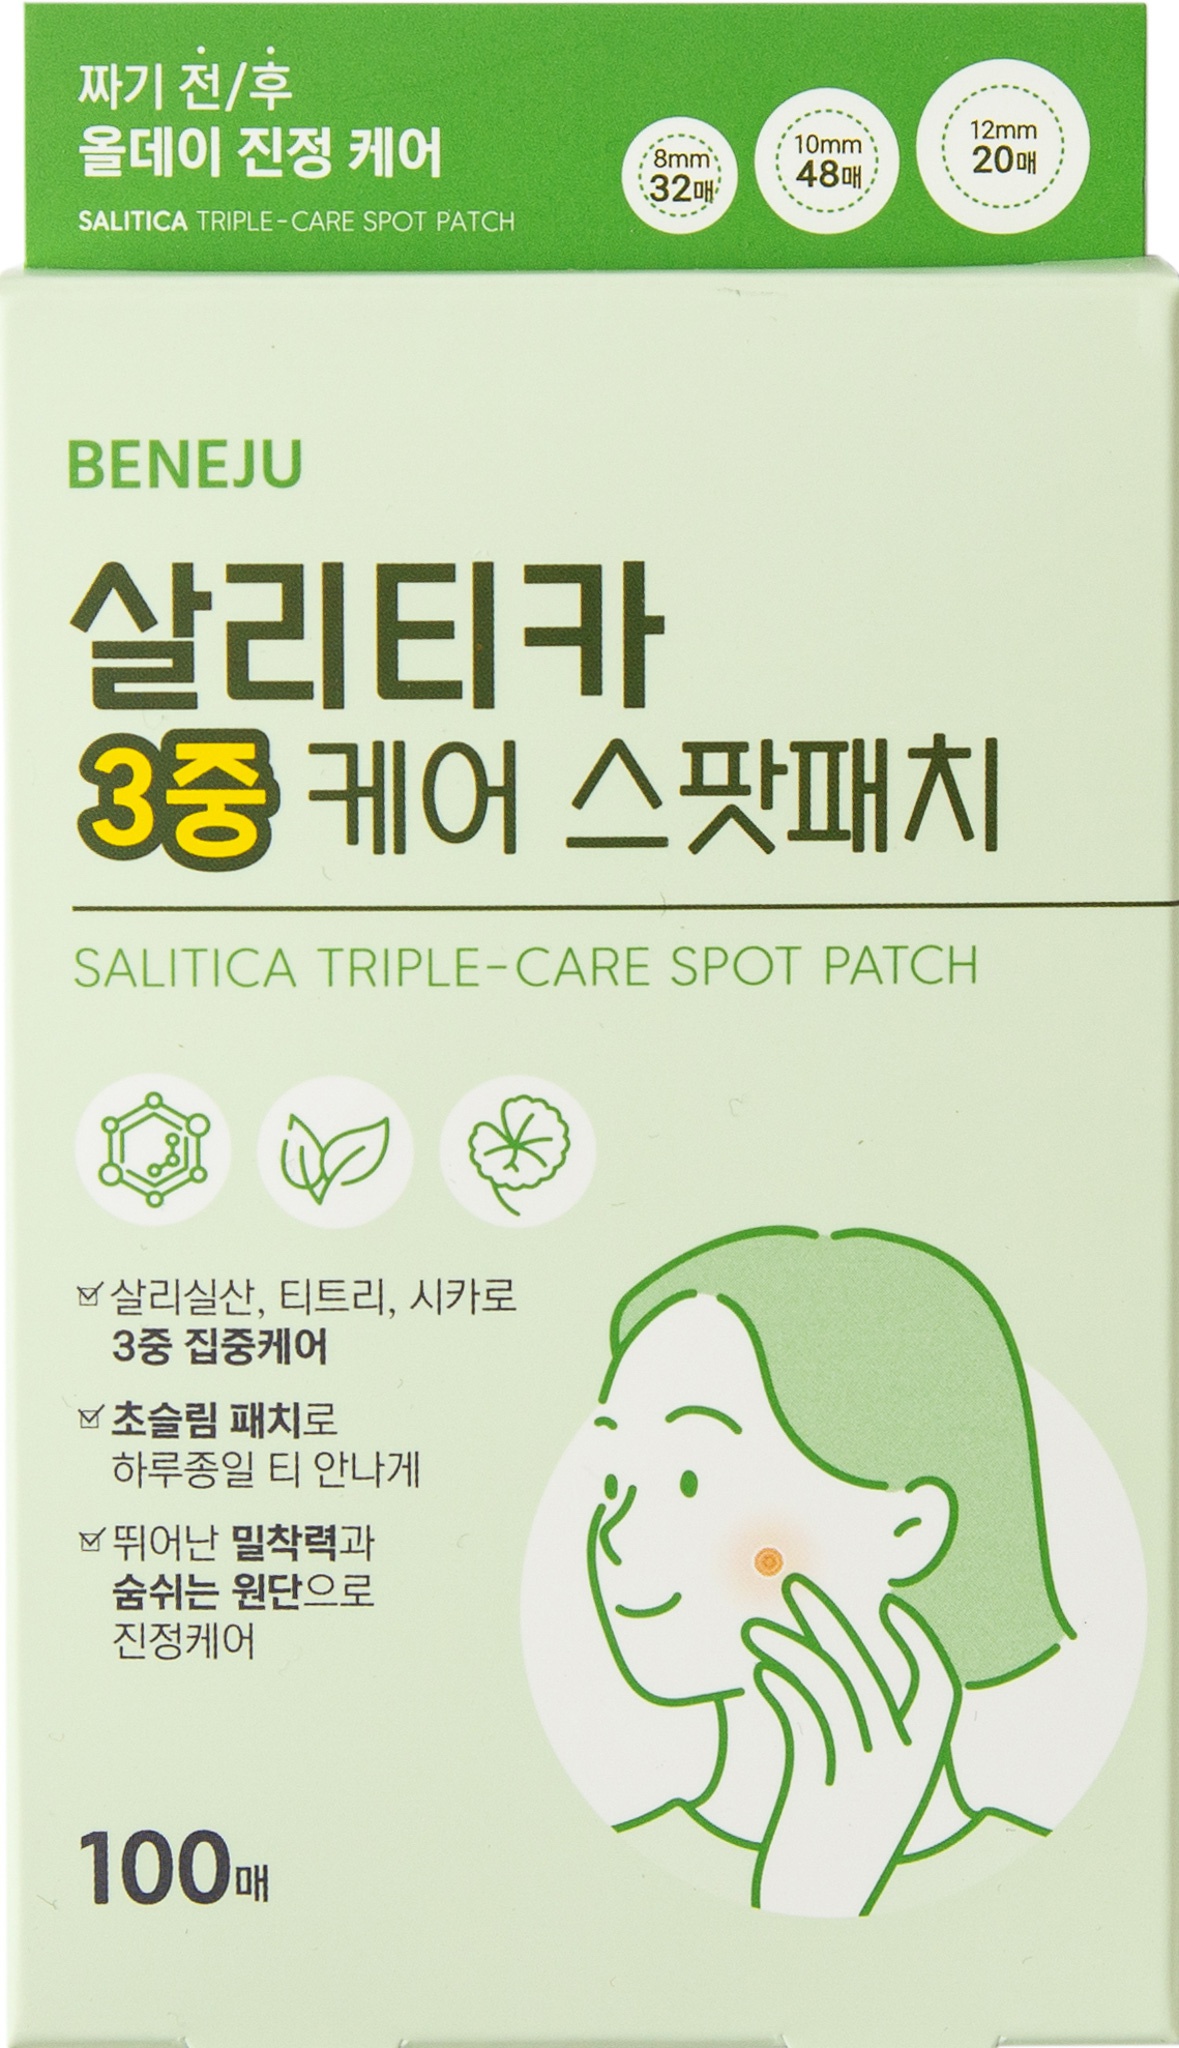 Beneju Salitica Triple Care Spot Patch